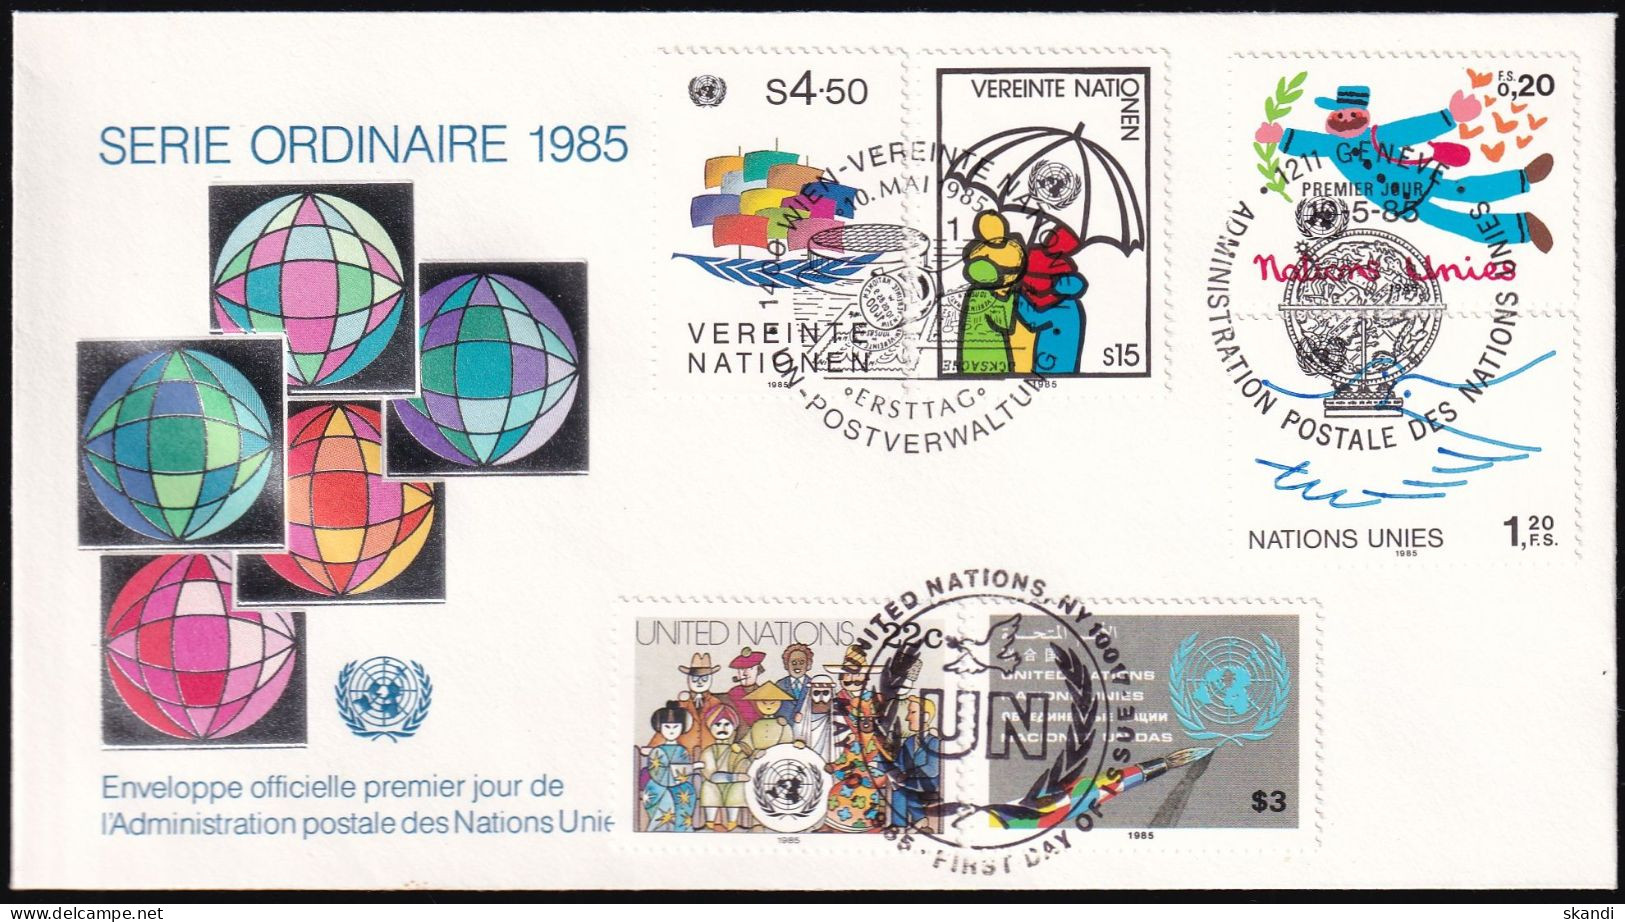 UNO NEW YORK - WIEN - GENF 1985 TRIO-FDC Dauerserie - Emissions Communes New York/Genève/Vienne